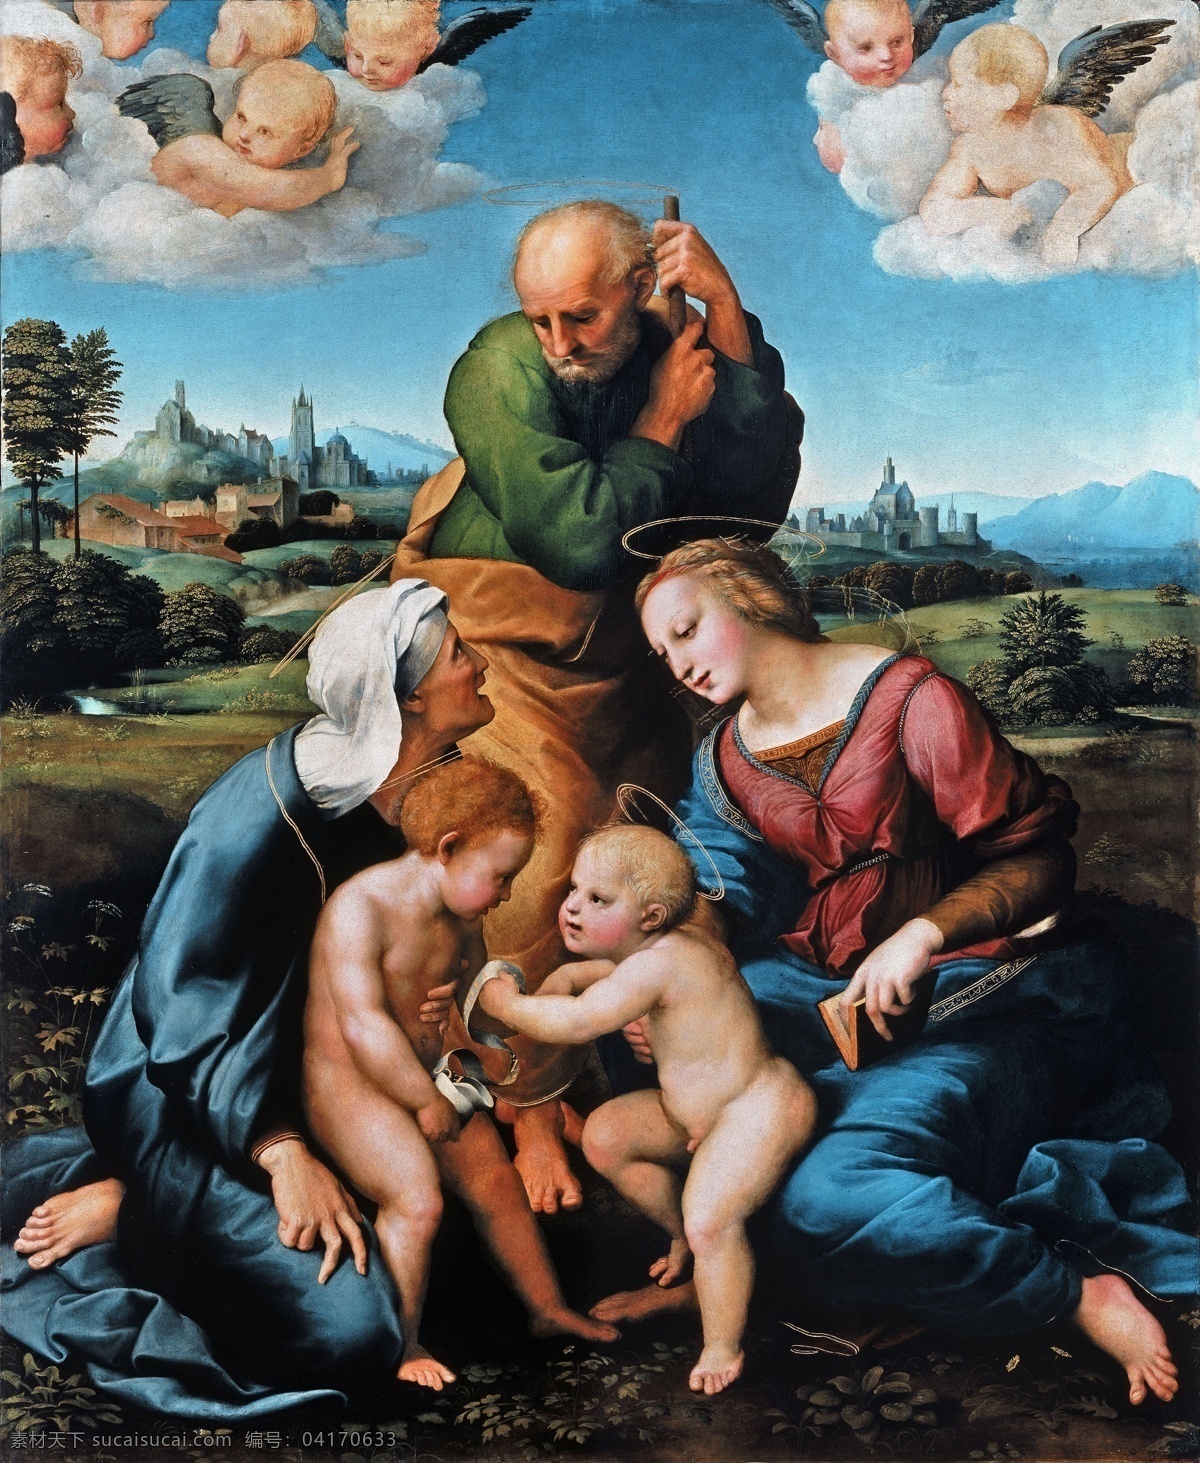 拉斐尔作品 文艺复兴时期 意大利画家 国家艺术馆 拉斐尔 宗教艺术 圣母 绘画书法 文化艺术 耶稣 古典油画 人物 绘画 拉斐尔油画